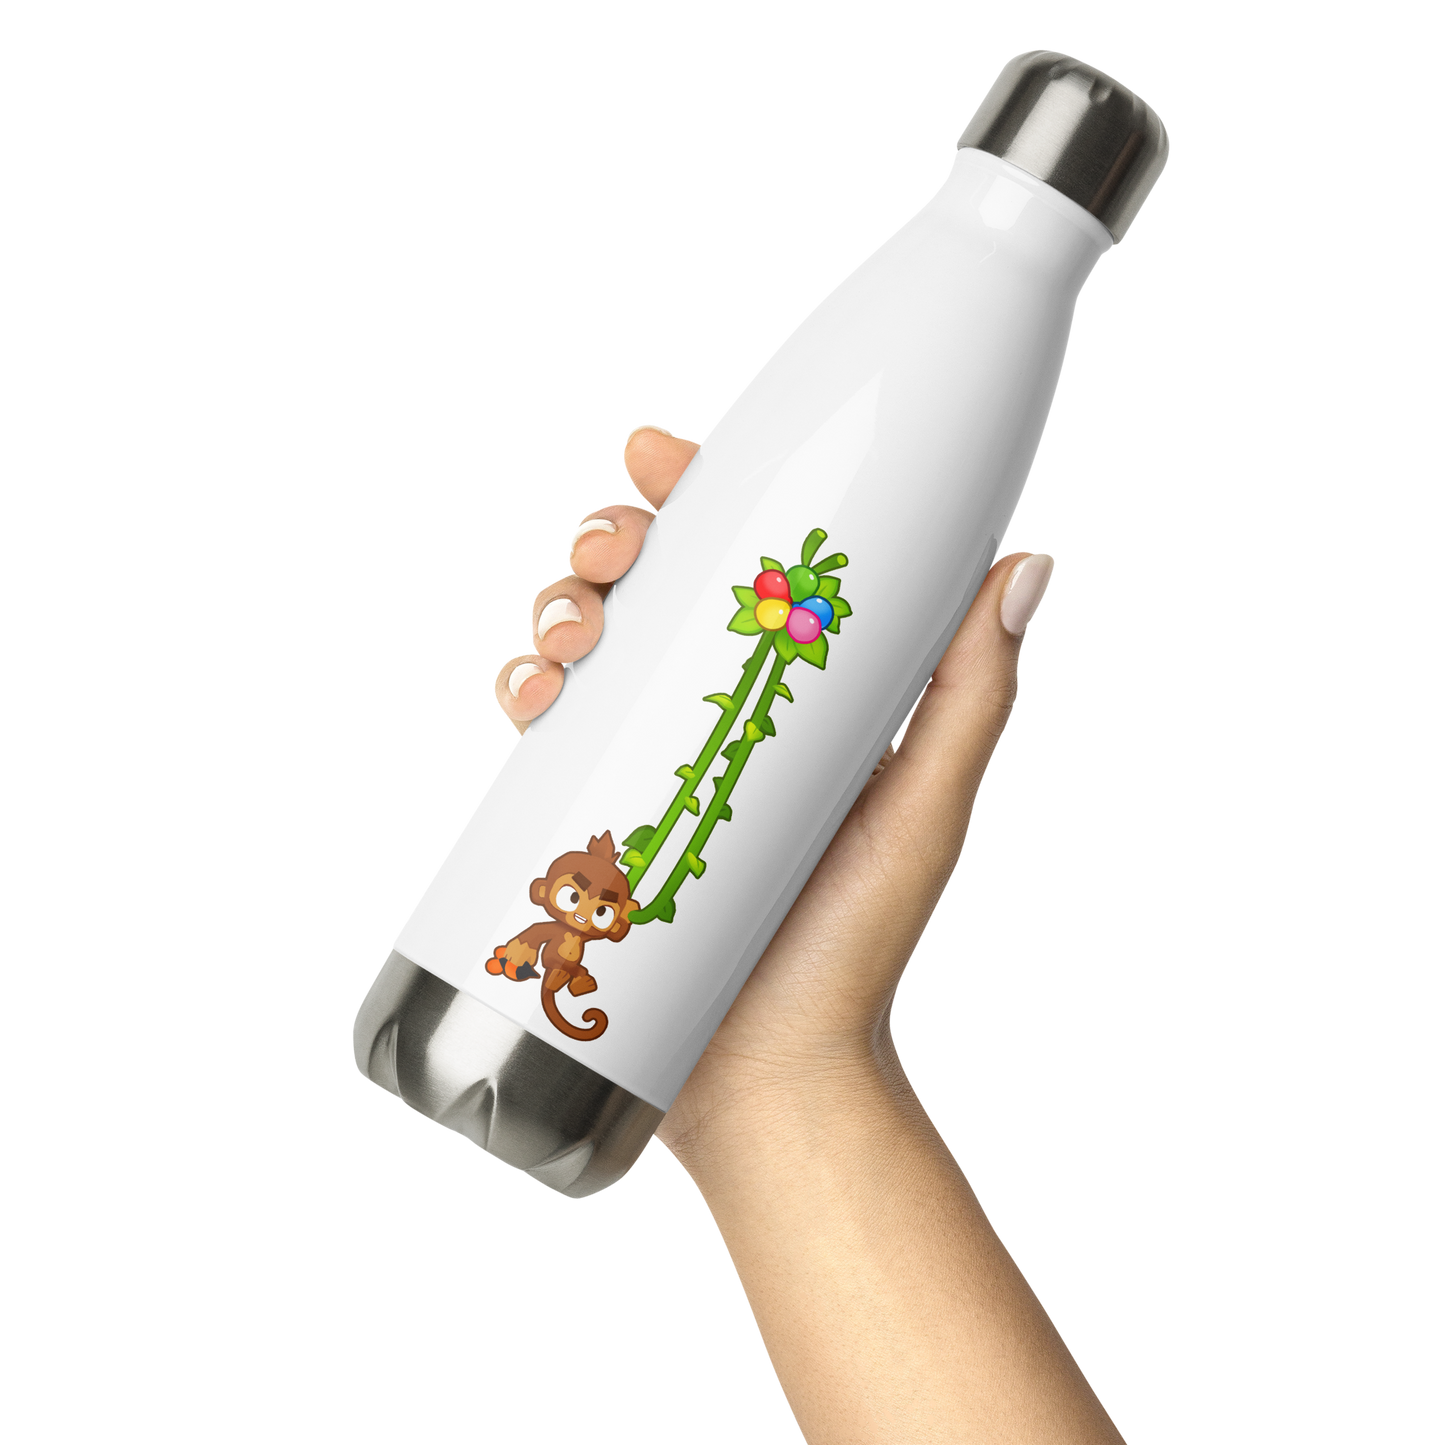 Vine Monkey Stainless Steel Water Bottle